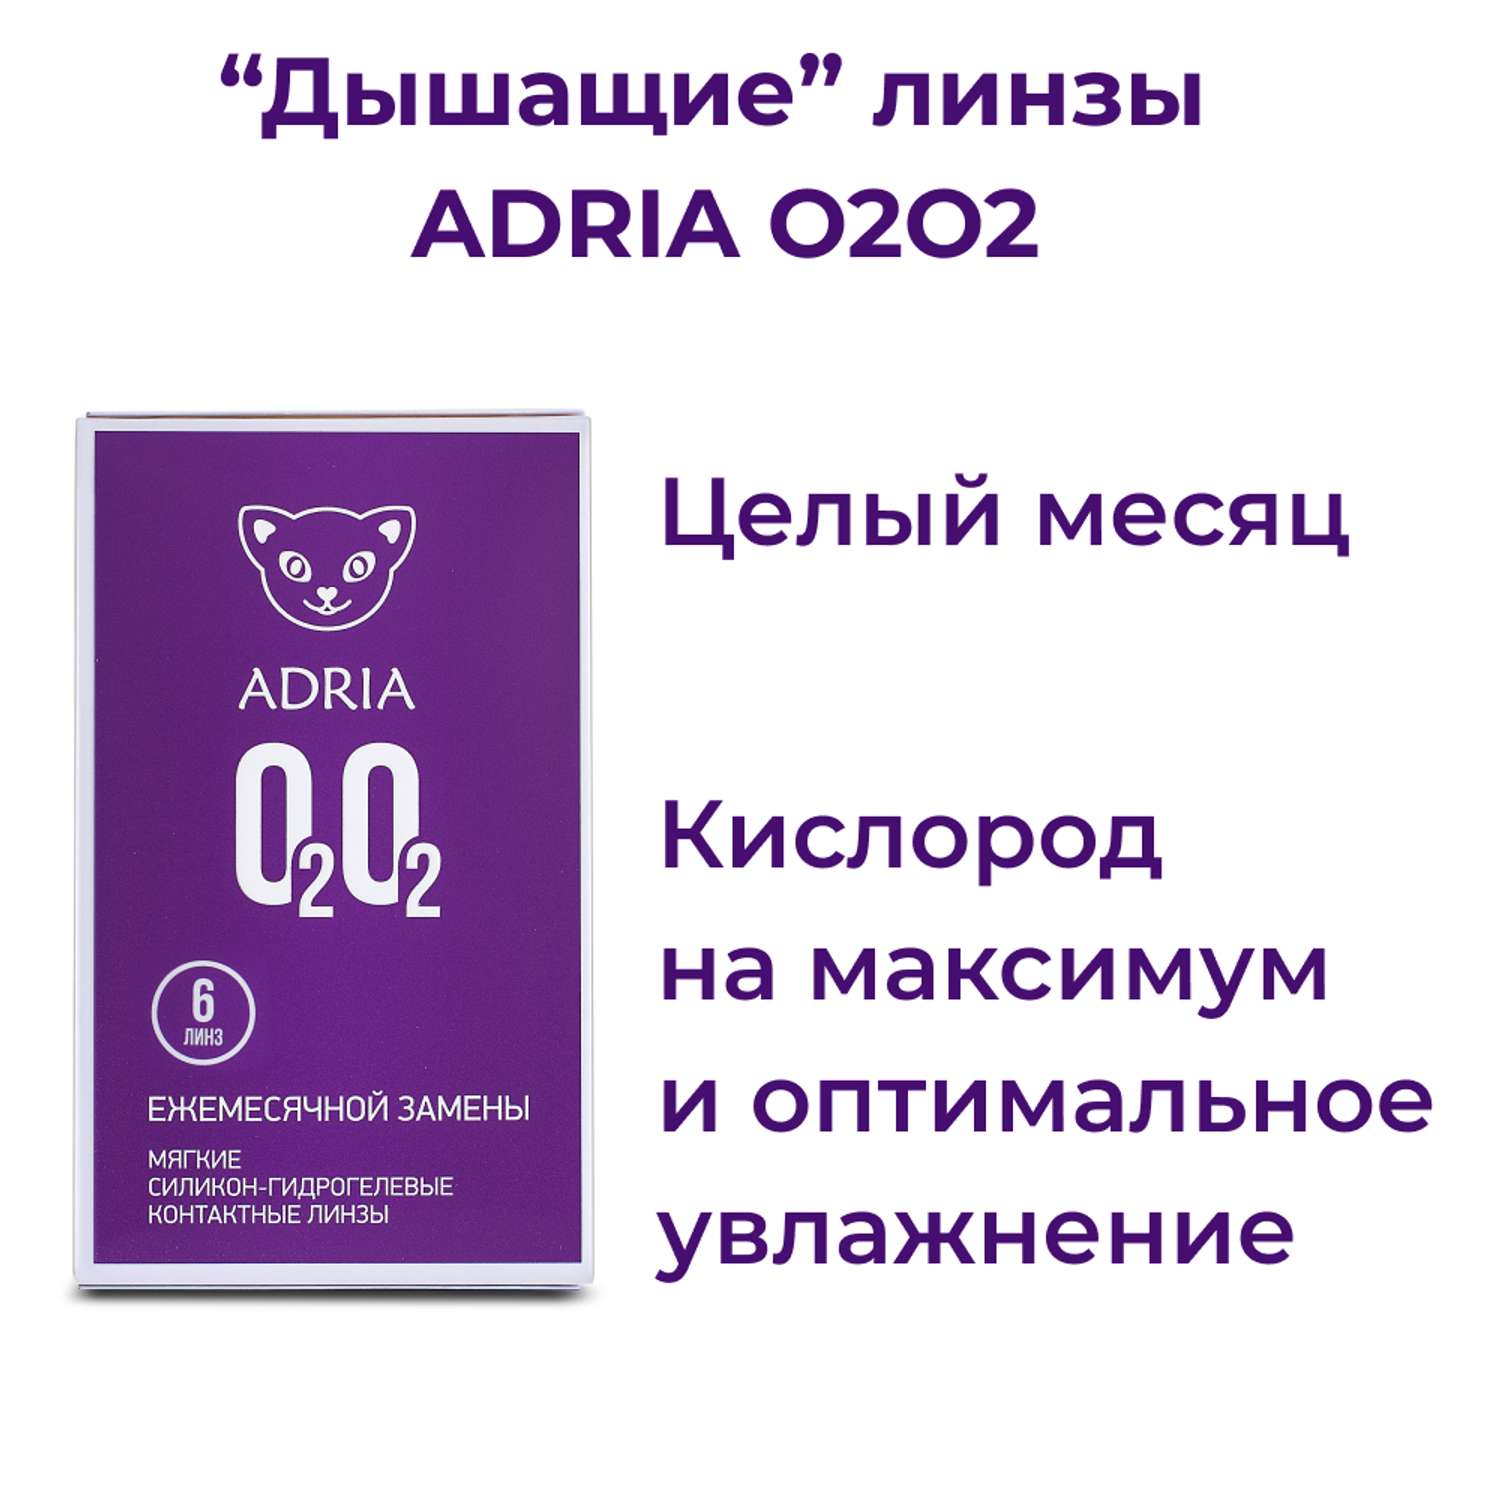 Контактные линзы ADRIA O2O2 6 линз R 8.6 -3.75 - фото 2